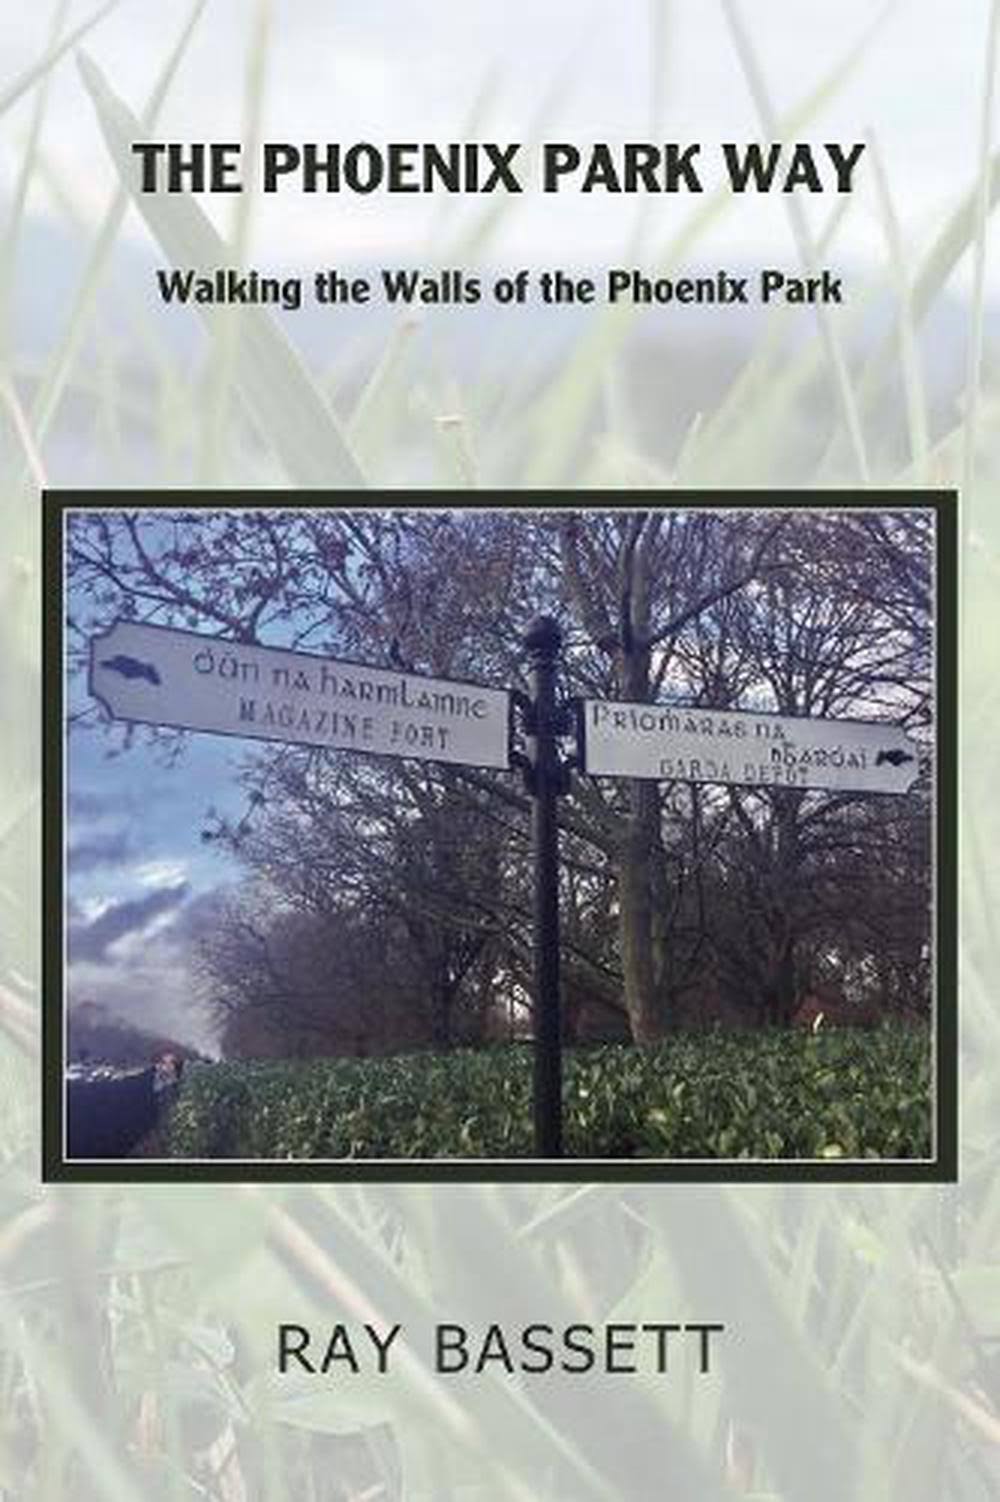 The Phoenix Park Way by Ray Bassett